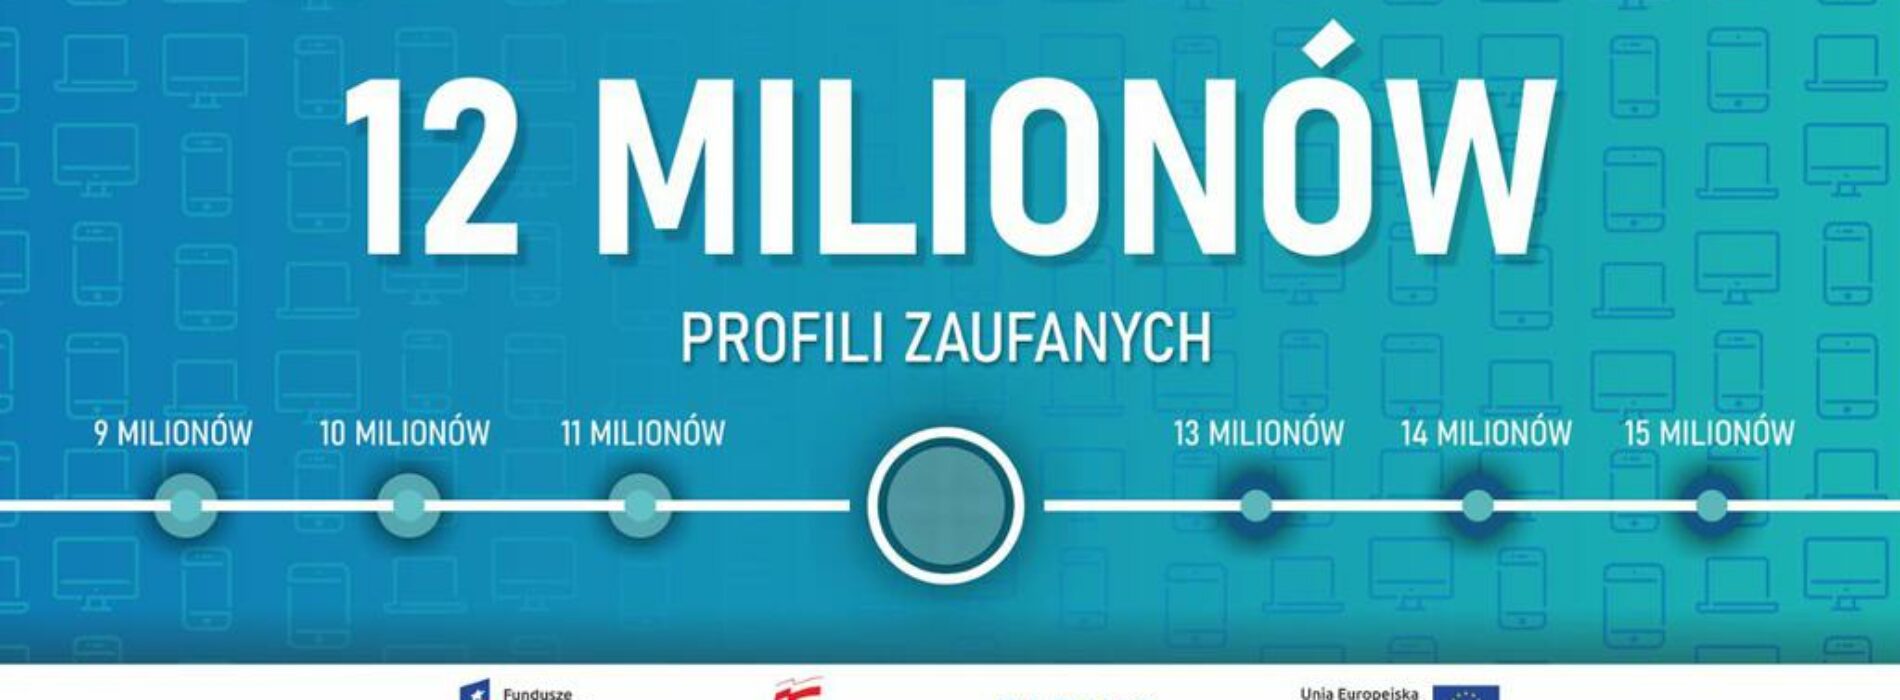 12 milionów Polaków z profilem zaufanym